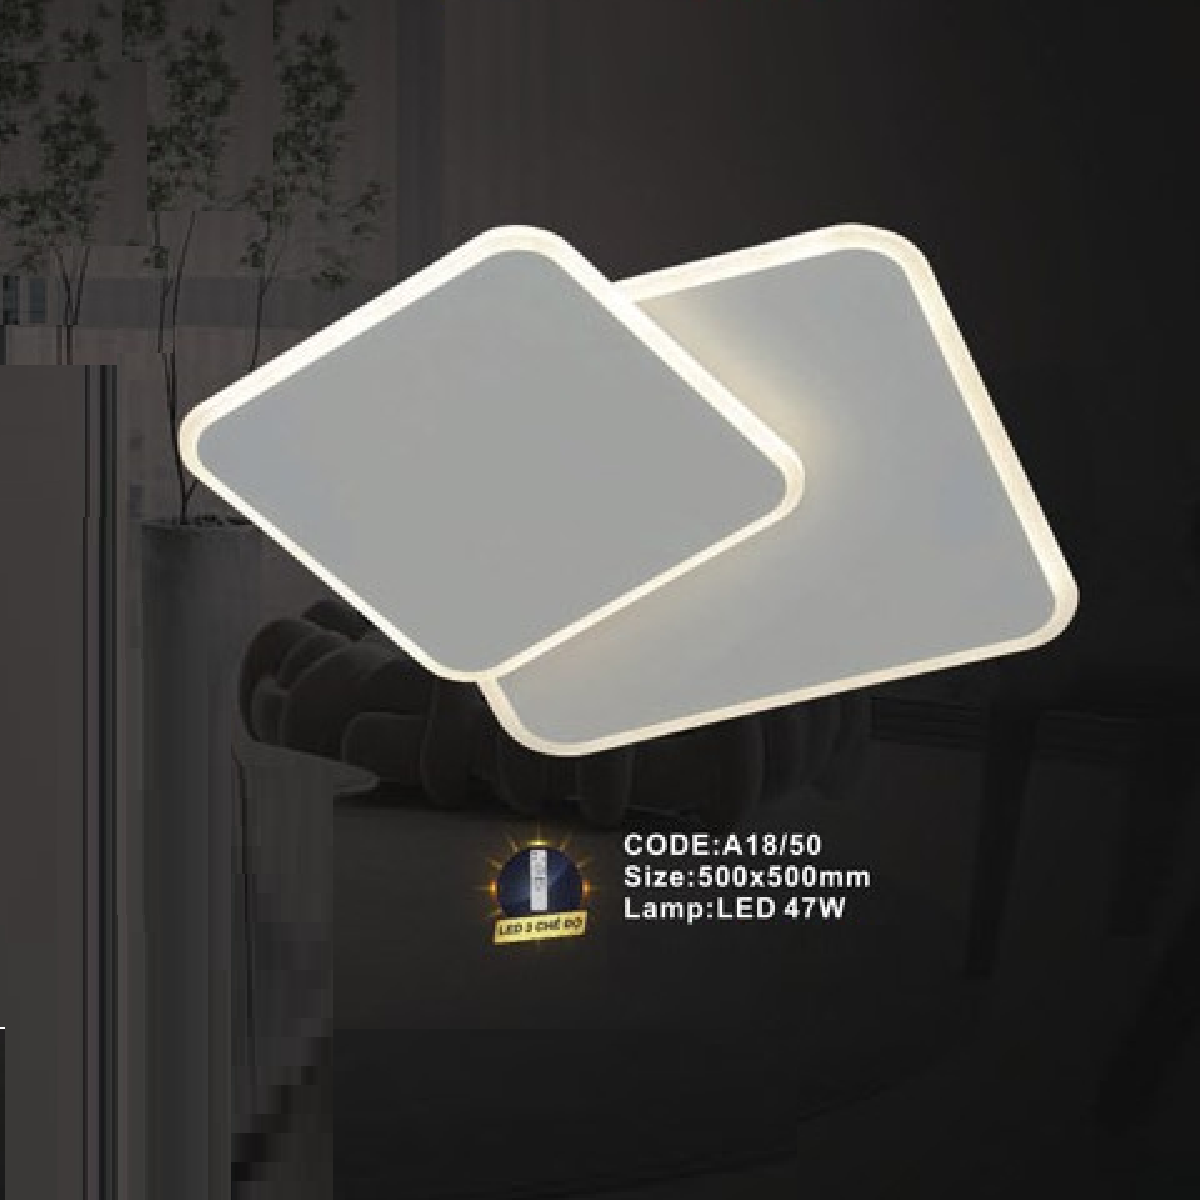 CODE: A18/50: Đèn áp trần vuông LED - KT: L500mm x W500mm - Đèn LED 47W ánh sáng đổi 3 màu